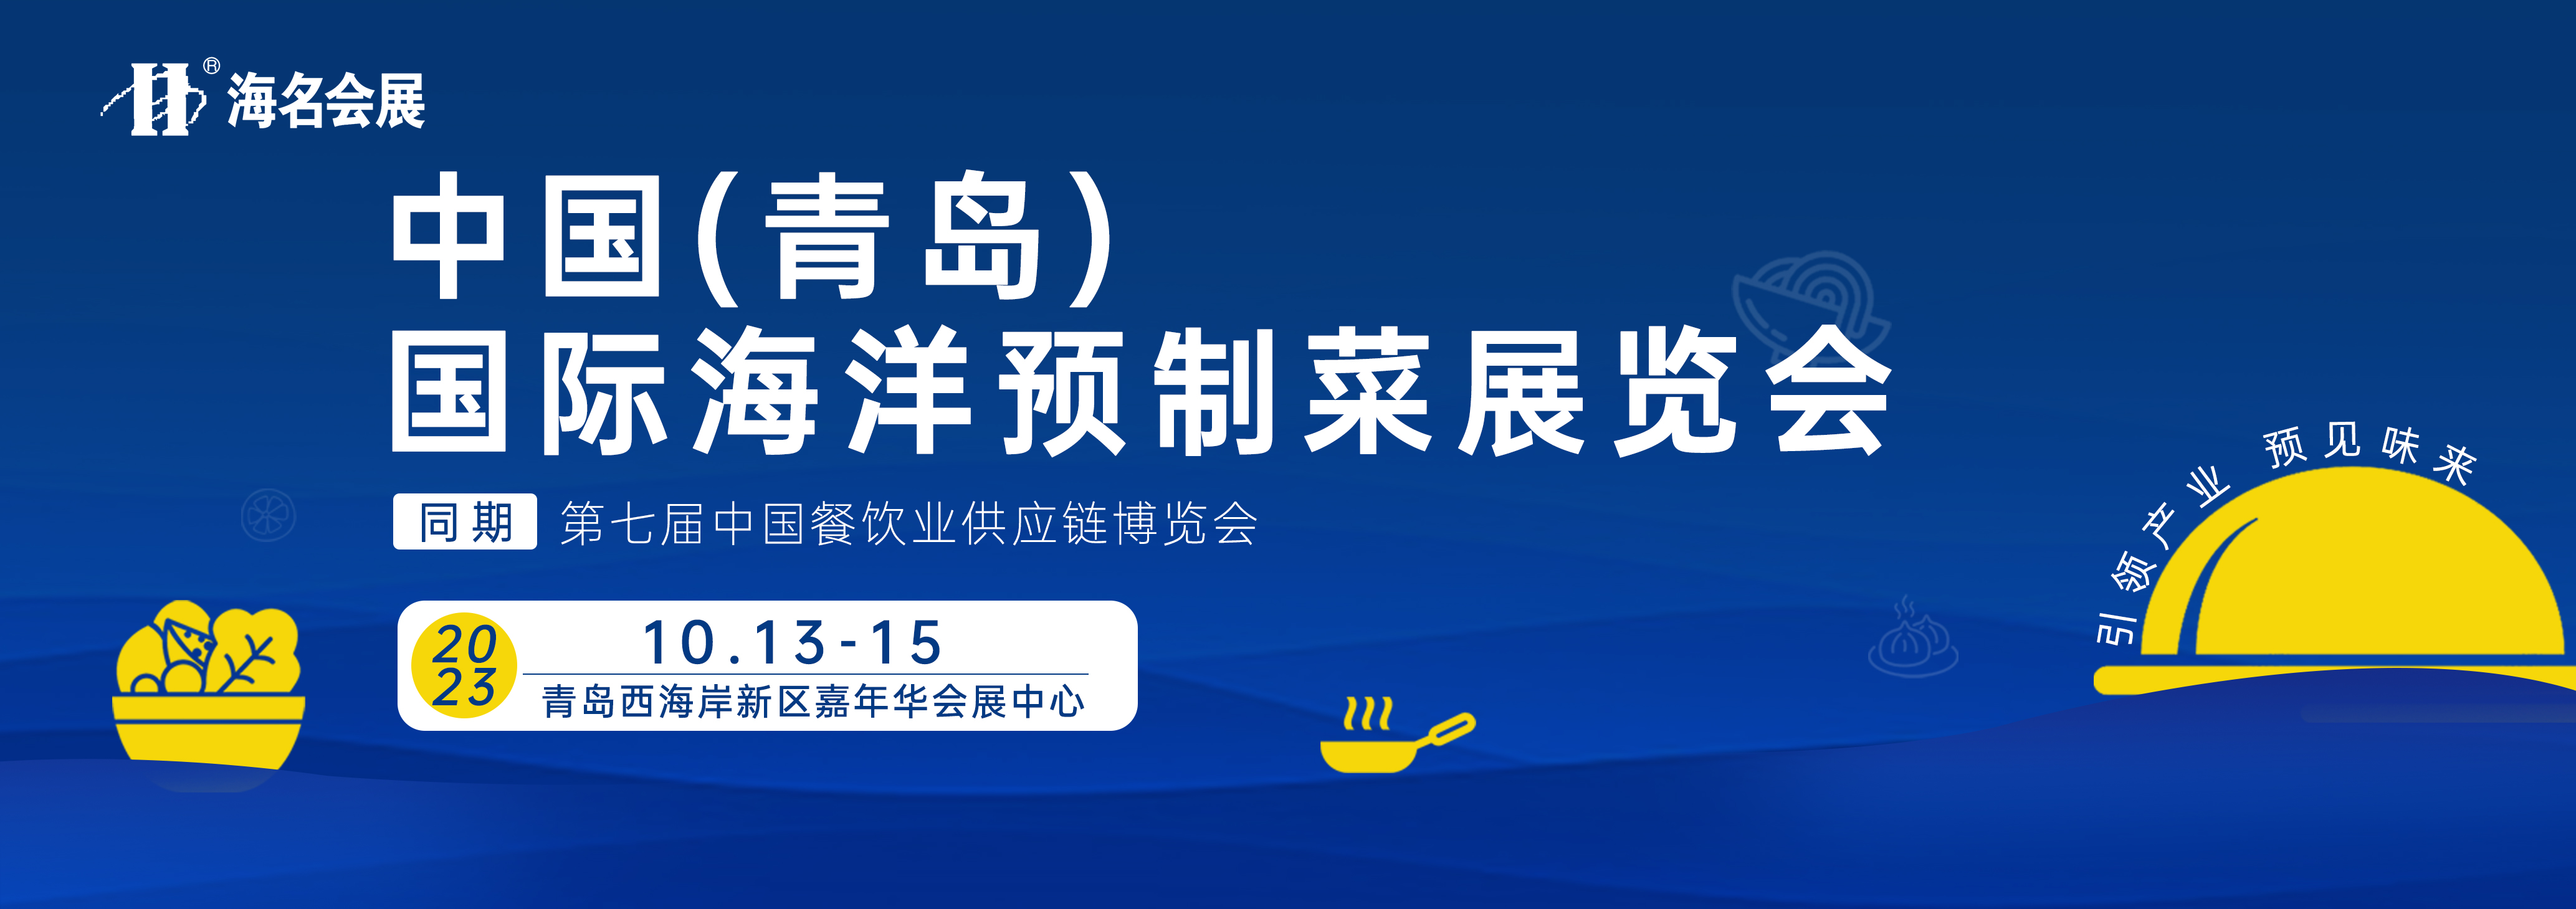 中国（青岛）国际海洋预制菜展览会10.13-15—邀您开拓海洋预制菜市场新蓝海！